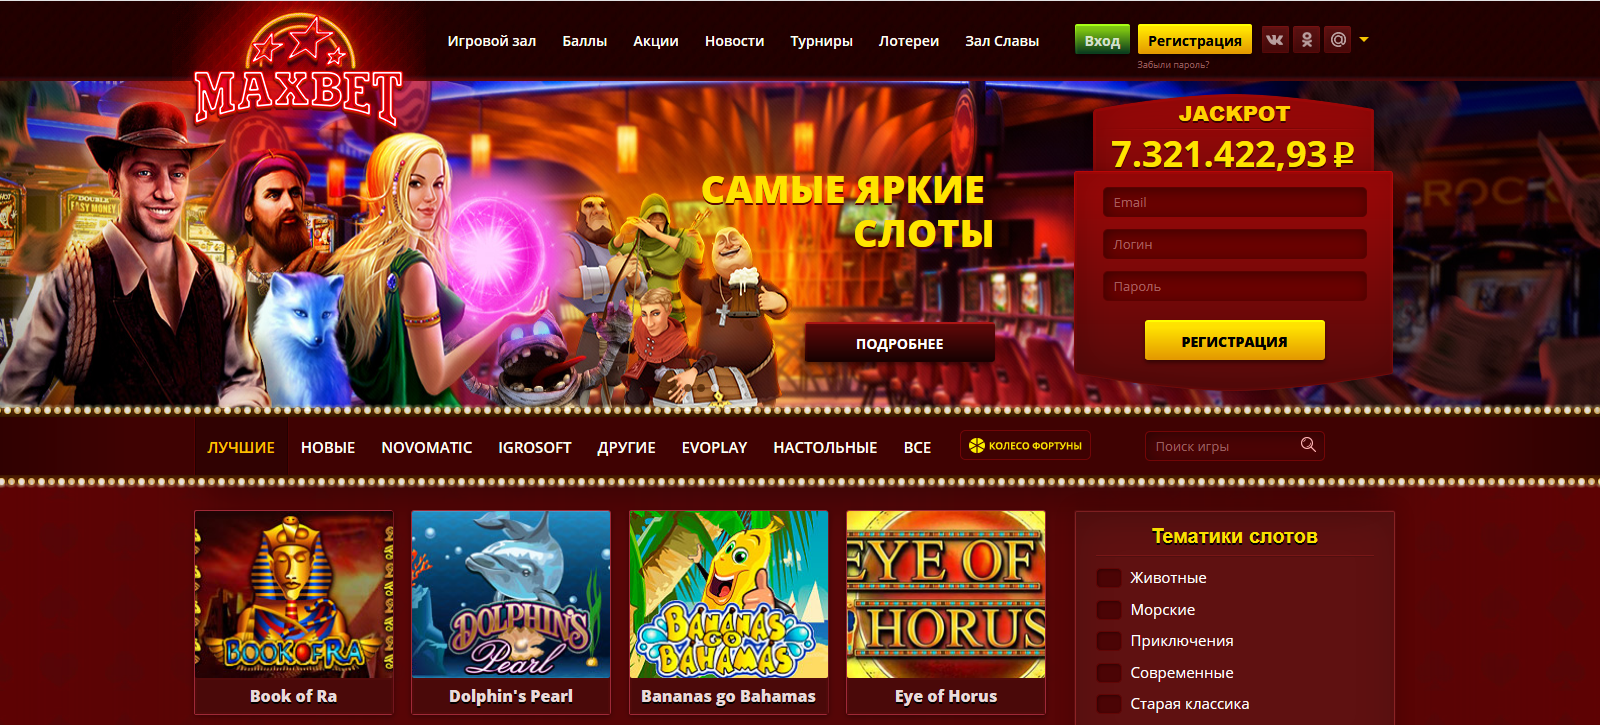 Скачать приложение максбет казино фортуна онлайн играть бесплатно